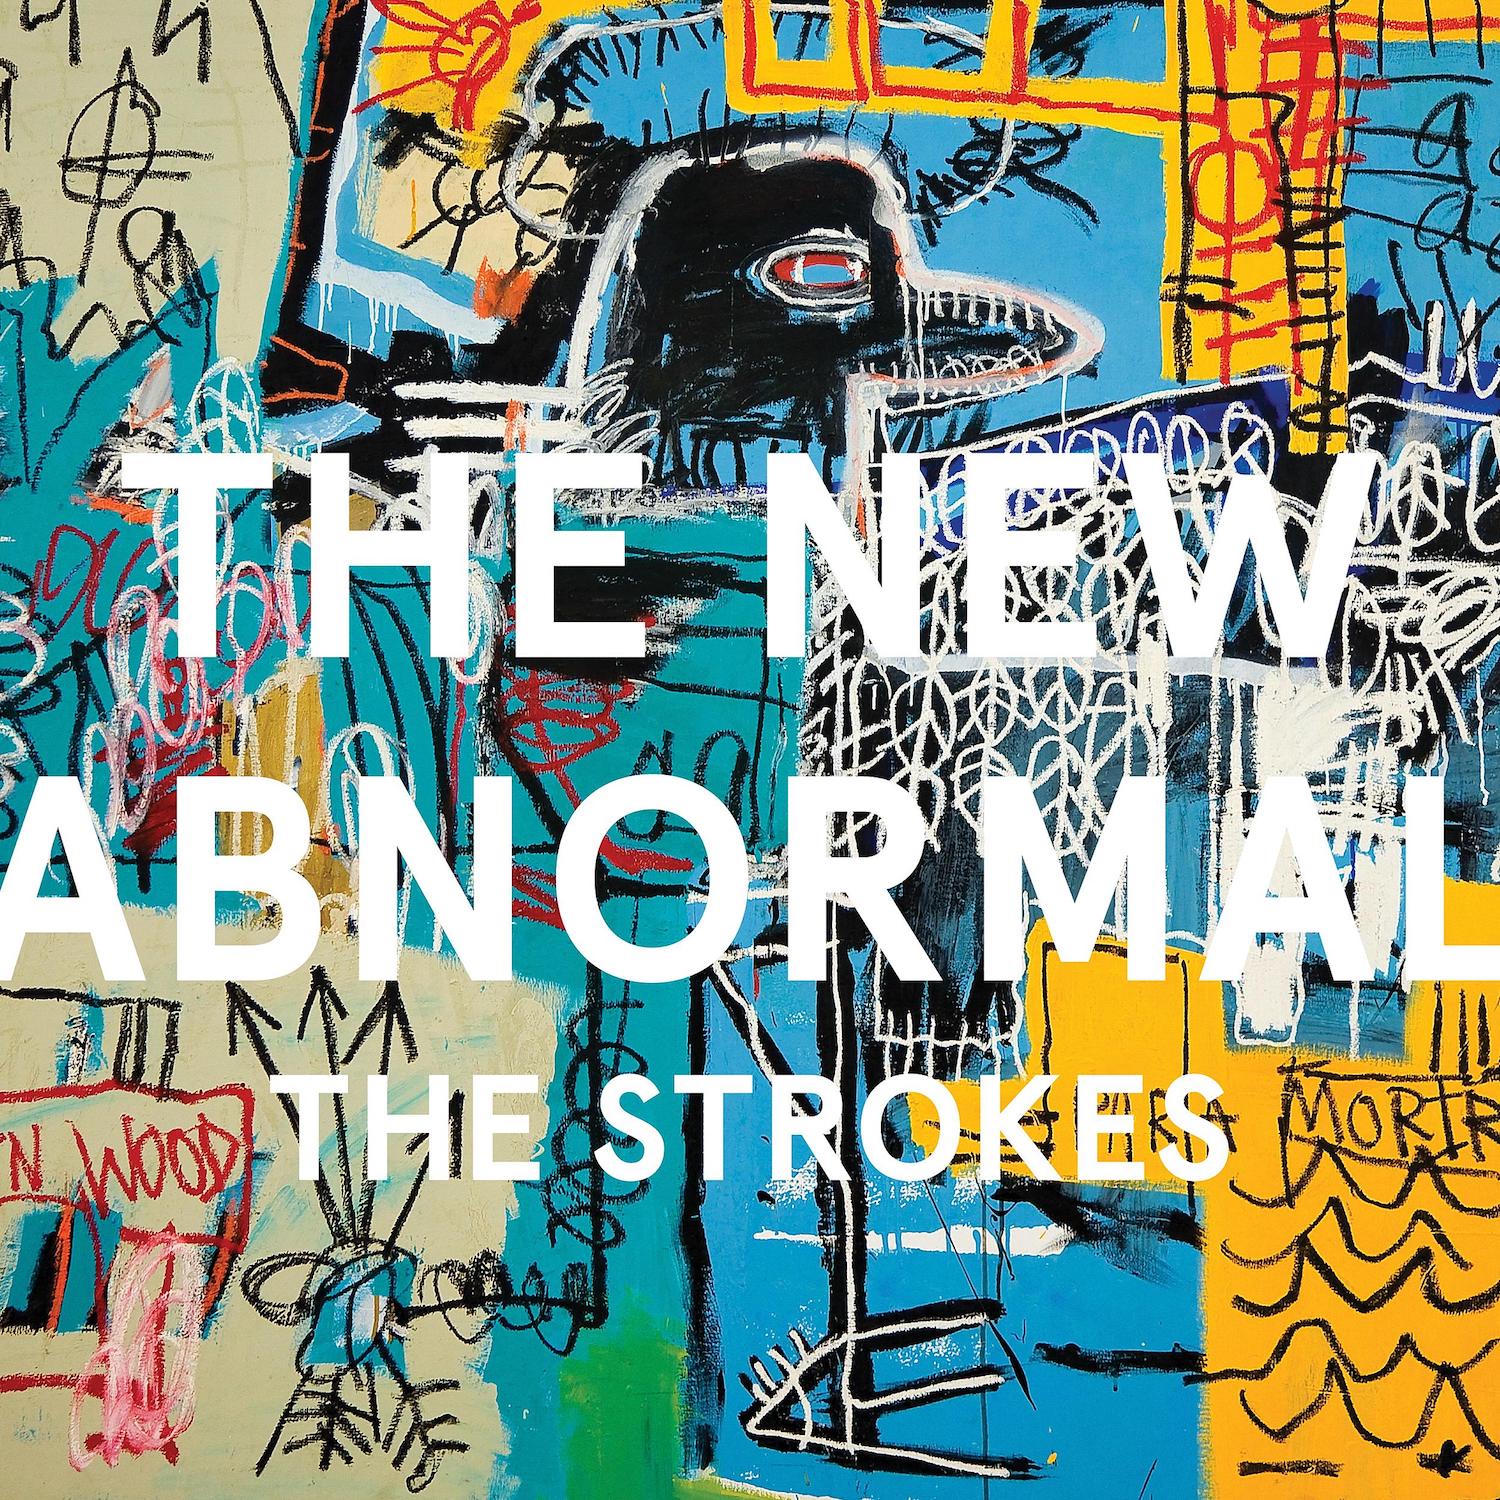 Jean-Michael Basquiat ilustra a capa do novo disco dos Strokes